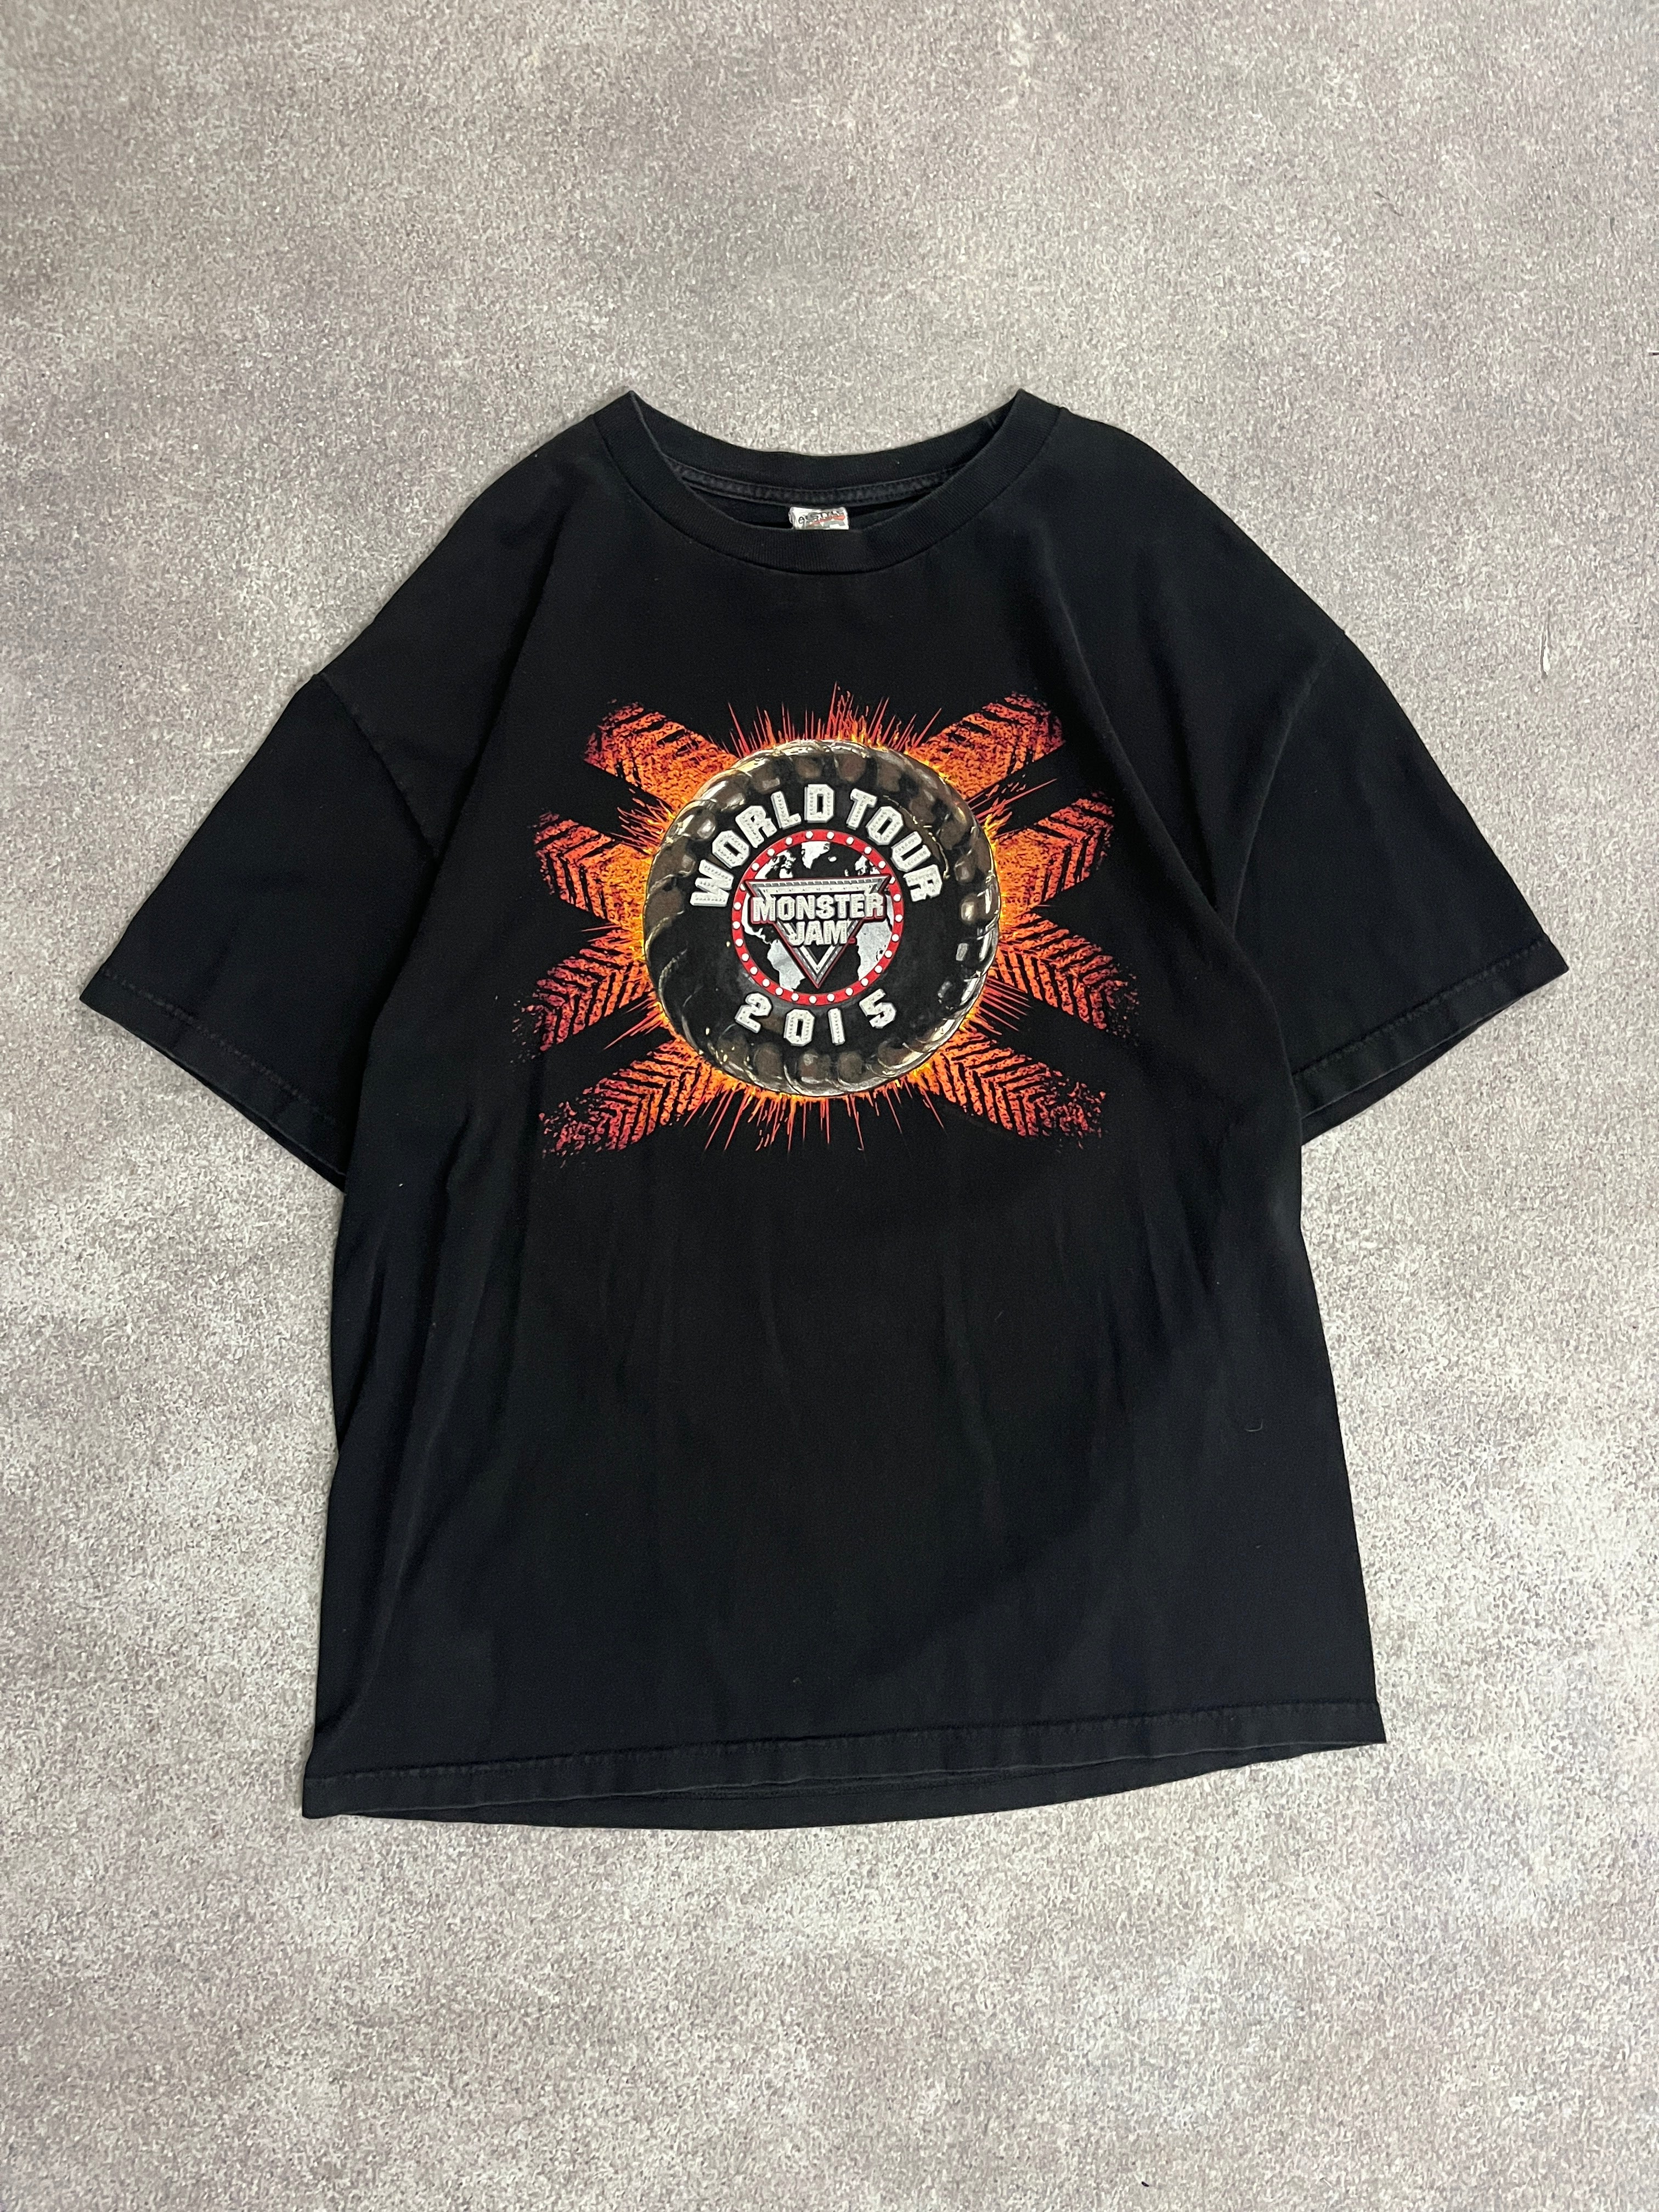 Vintage Monster Jam Racing Tshirt Black // Large - RHAGHOUSE VINTAGE